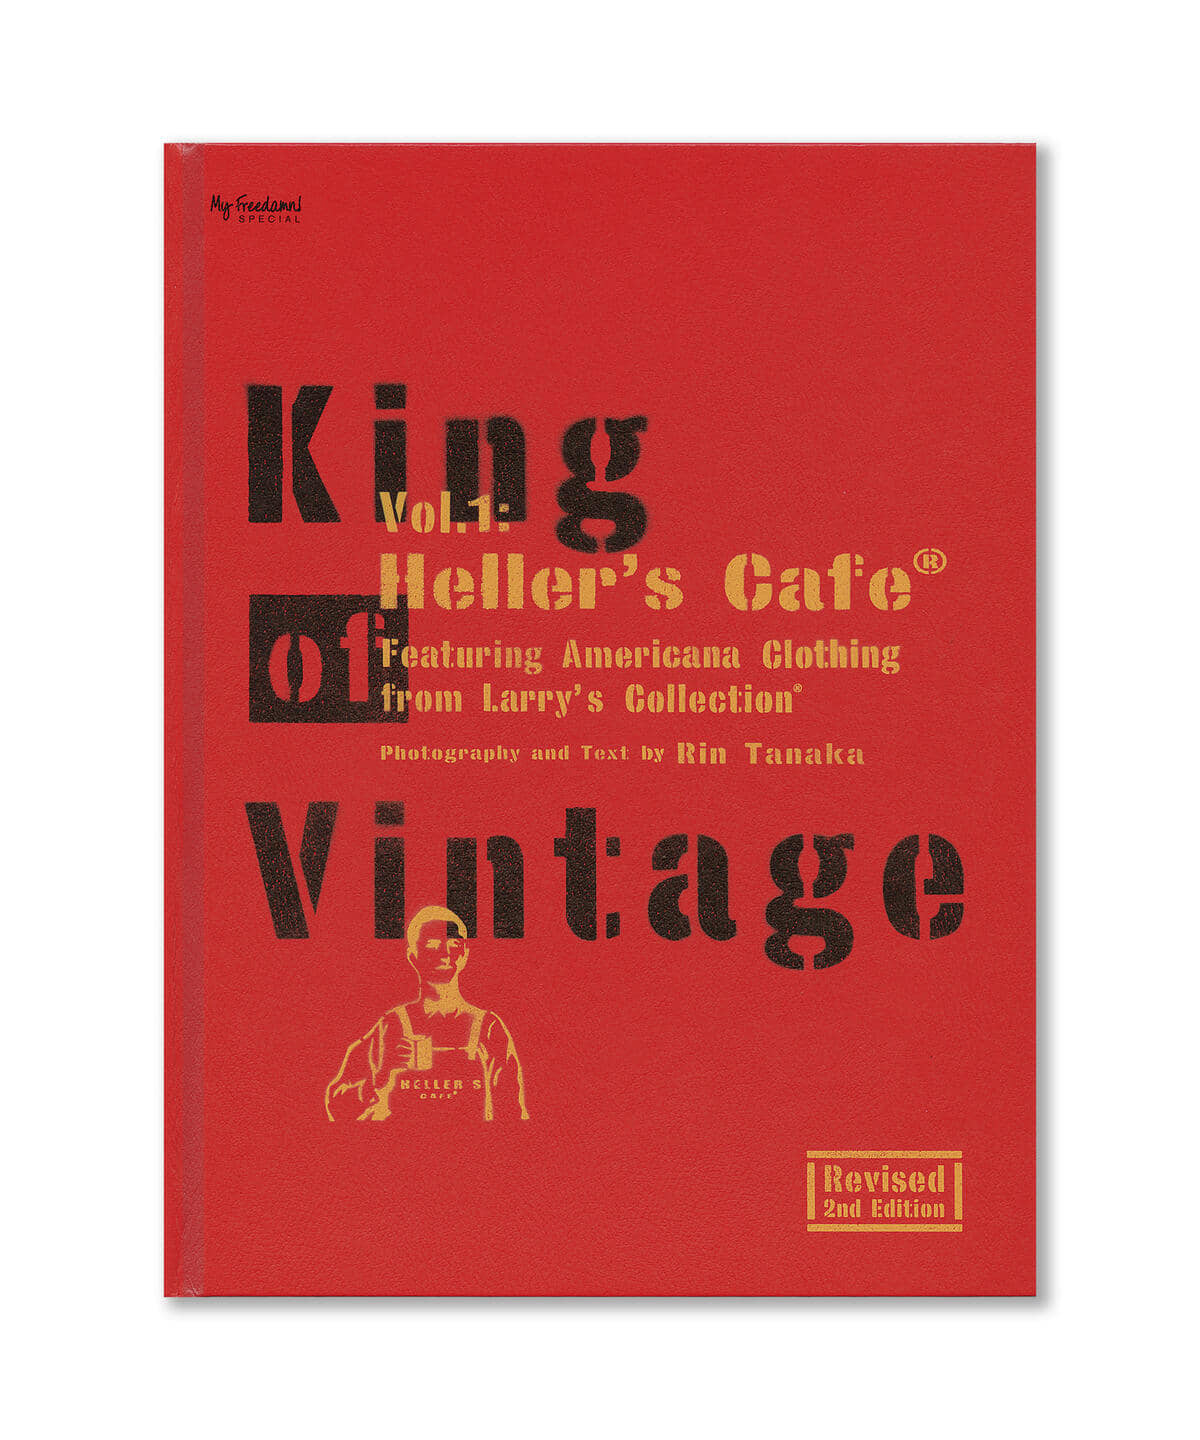 bPr BEAMS（bPrビームス）King of Vintage Vol.1 / Heller's Cafe Part 